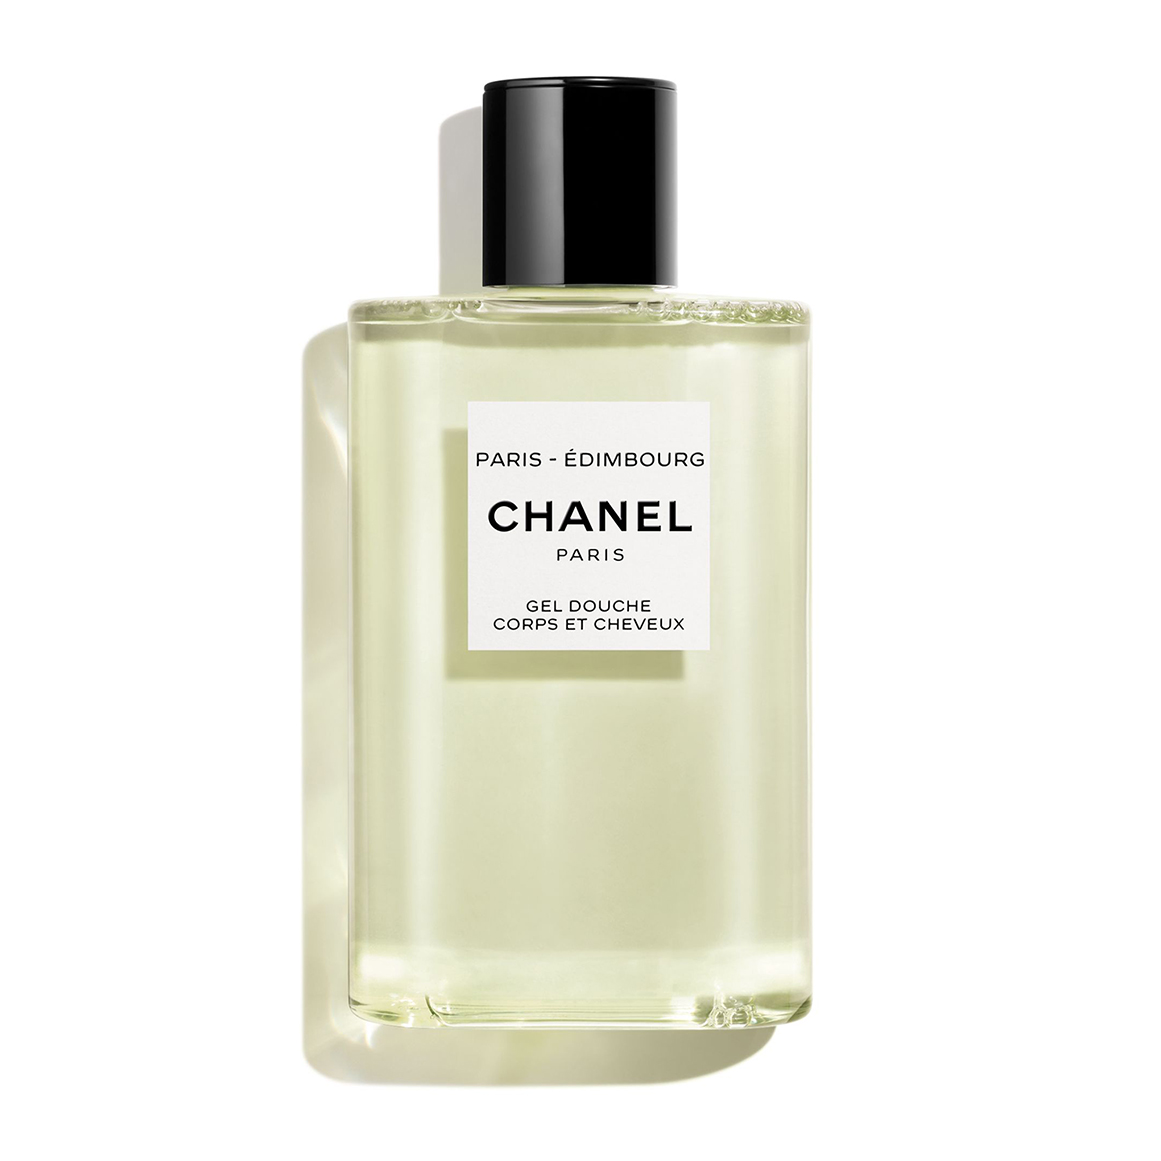 CHANEL PARIS EDIMBOURG LES EAUX DE CHANEL Hair & Body Shower Gel ...